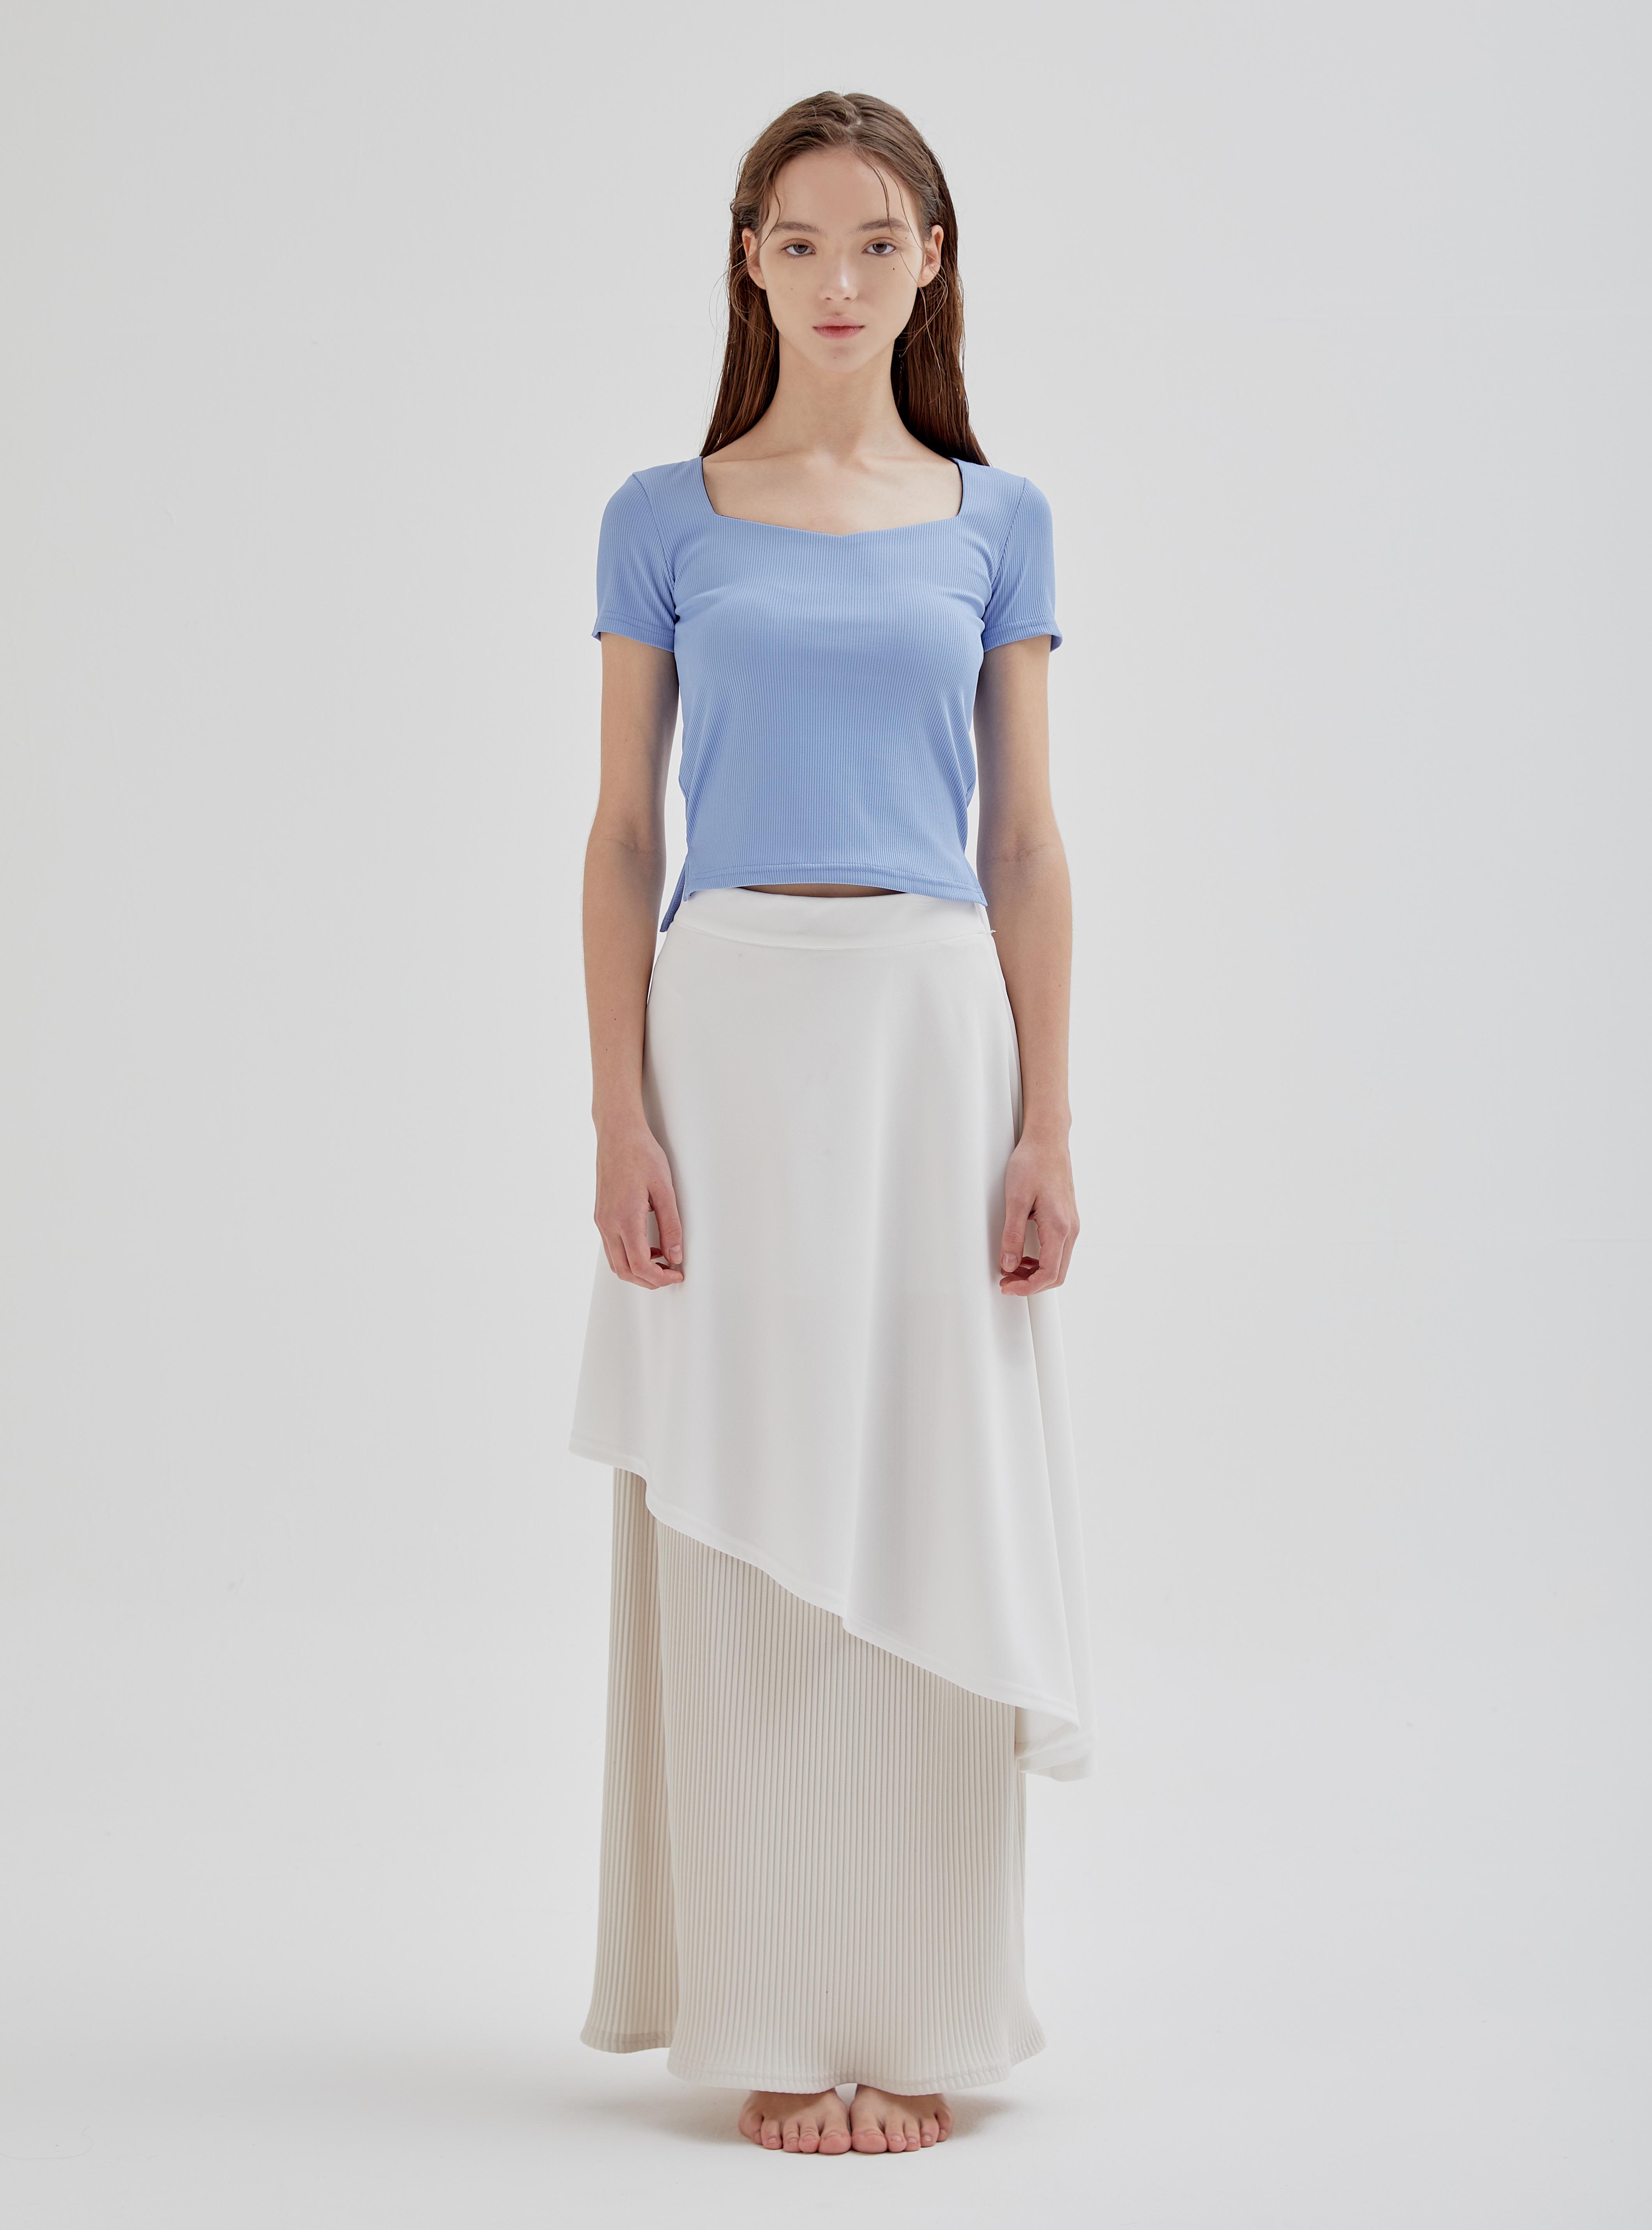 오니리크 스커트  Onirique skirt (2color)